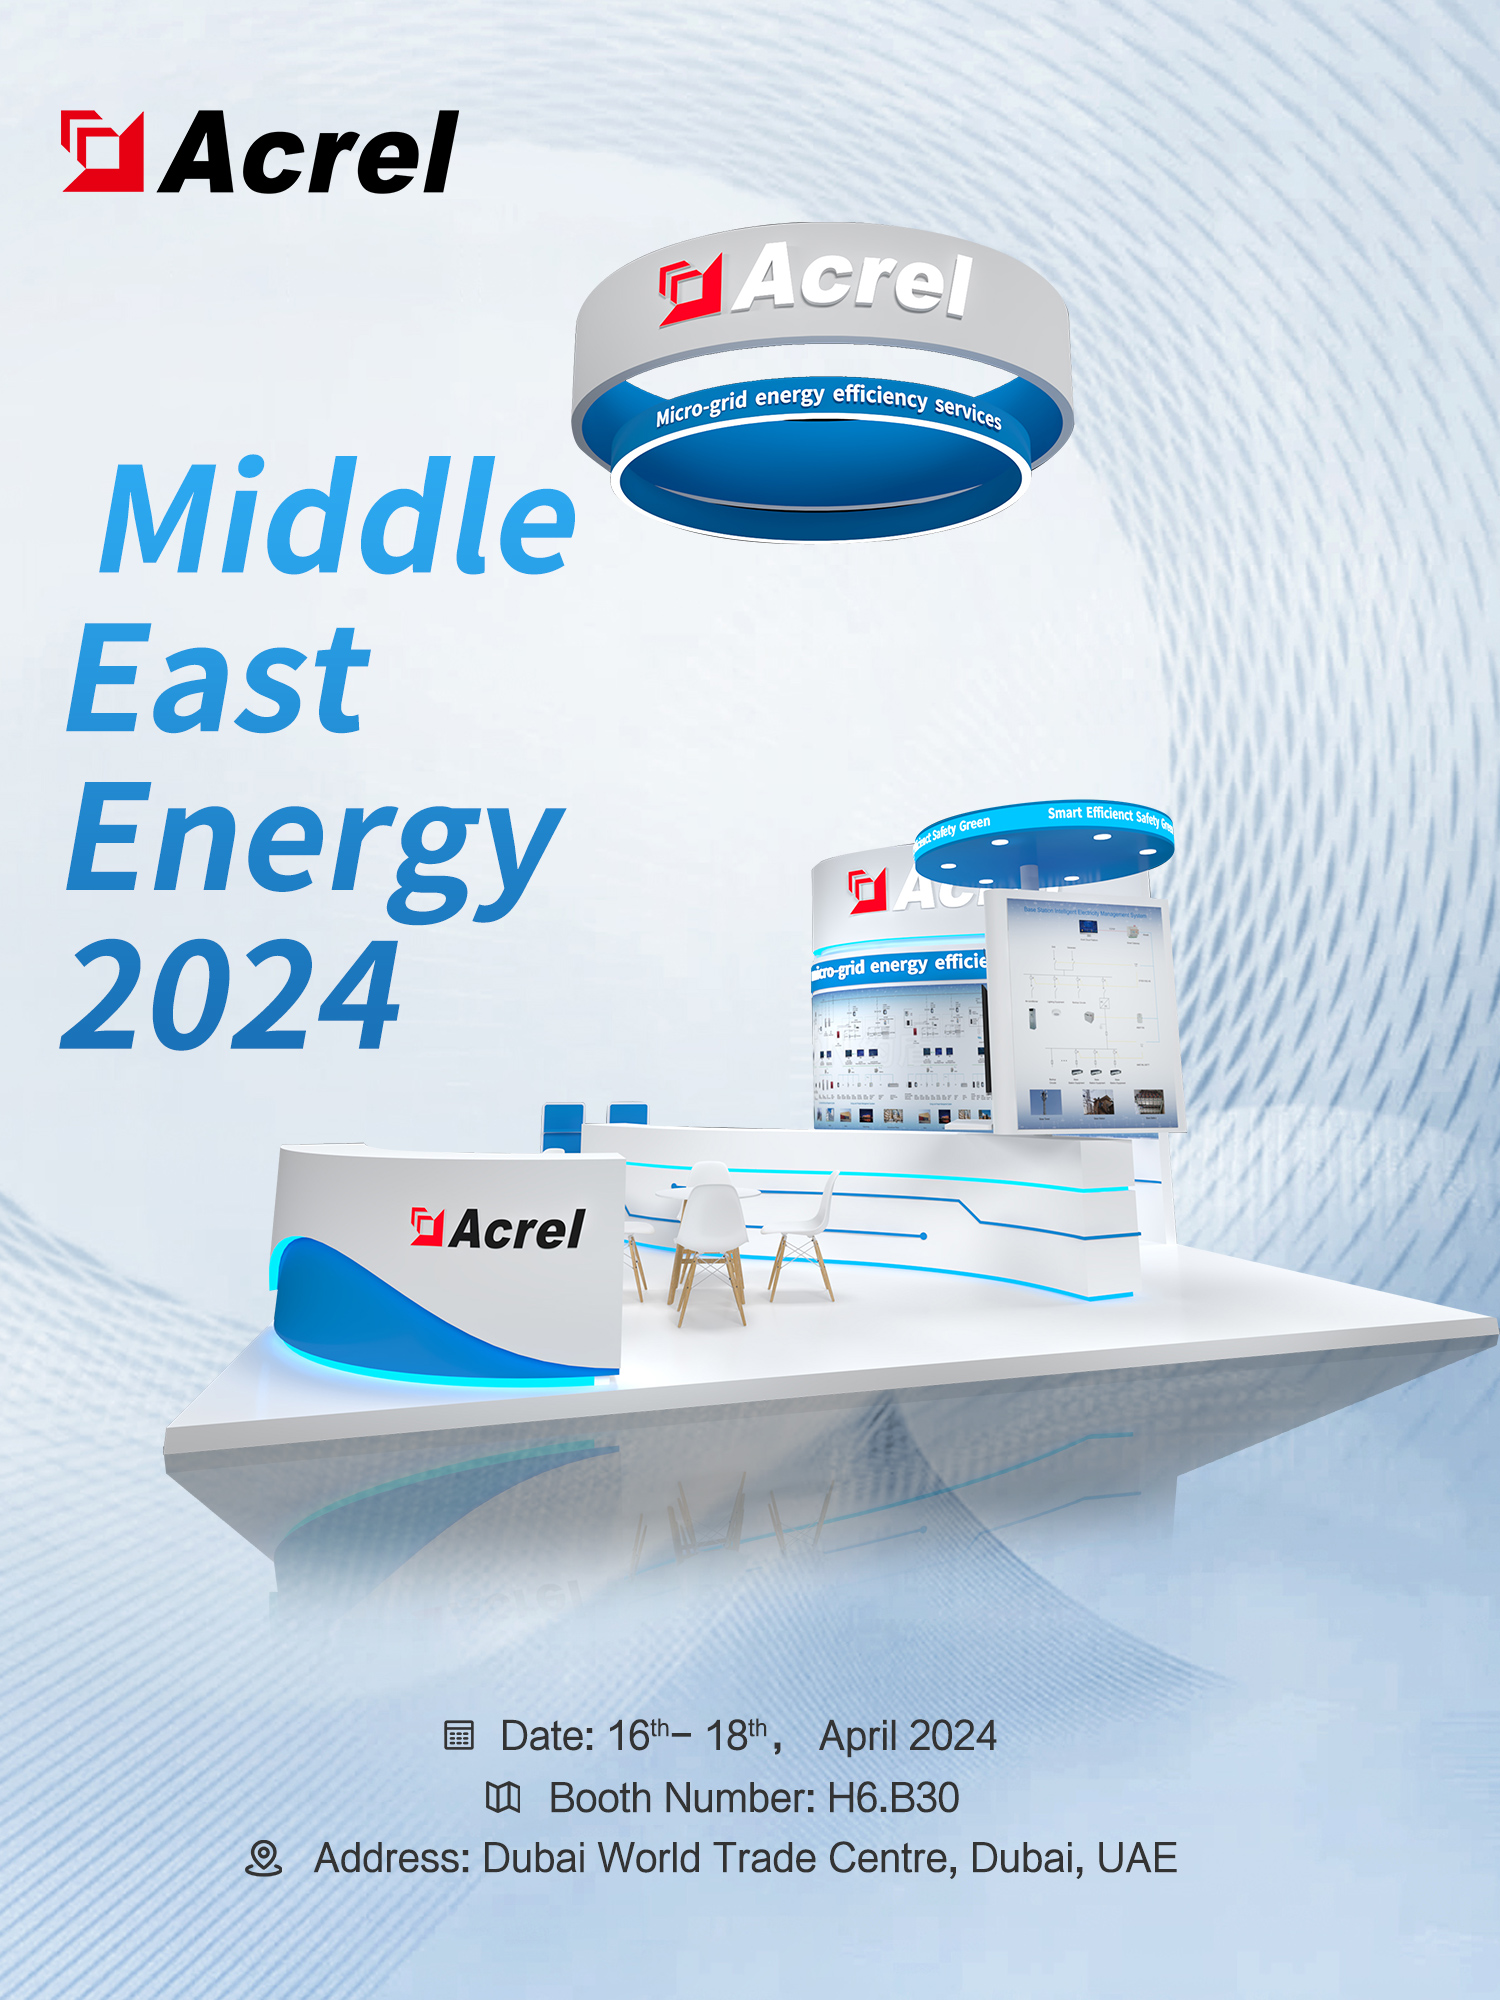 Acrel convida você para visitar a Exposição de Energia do Oriente Médio 2024